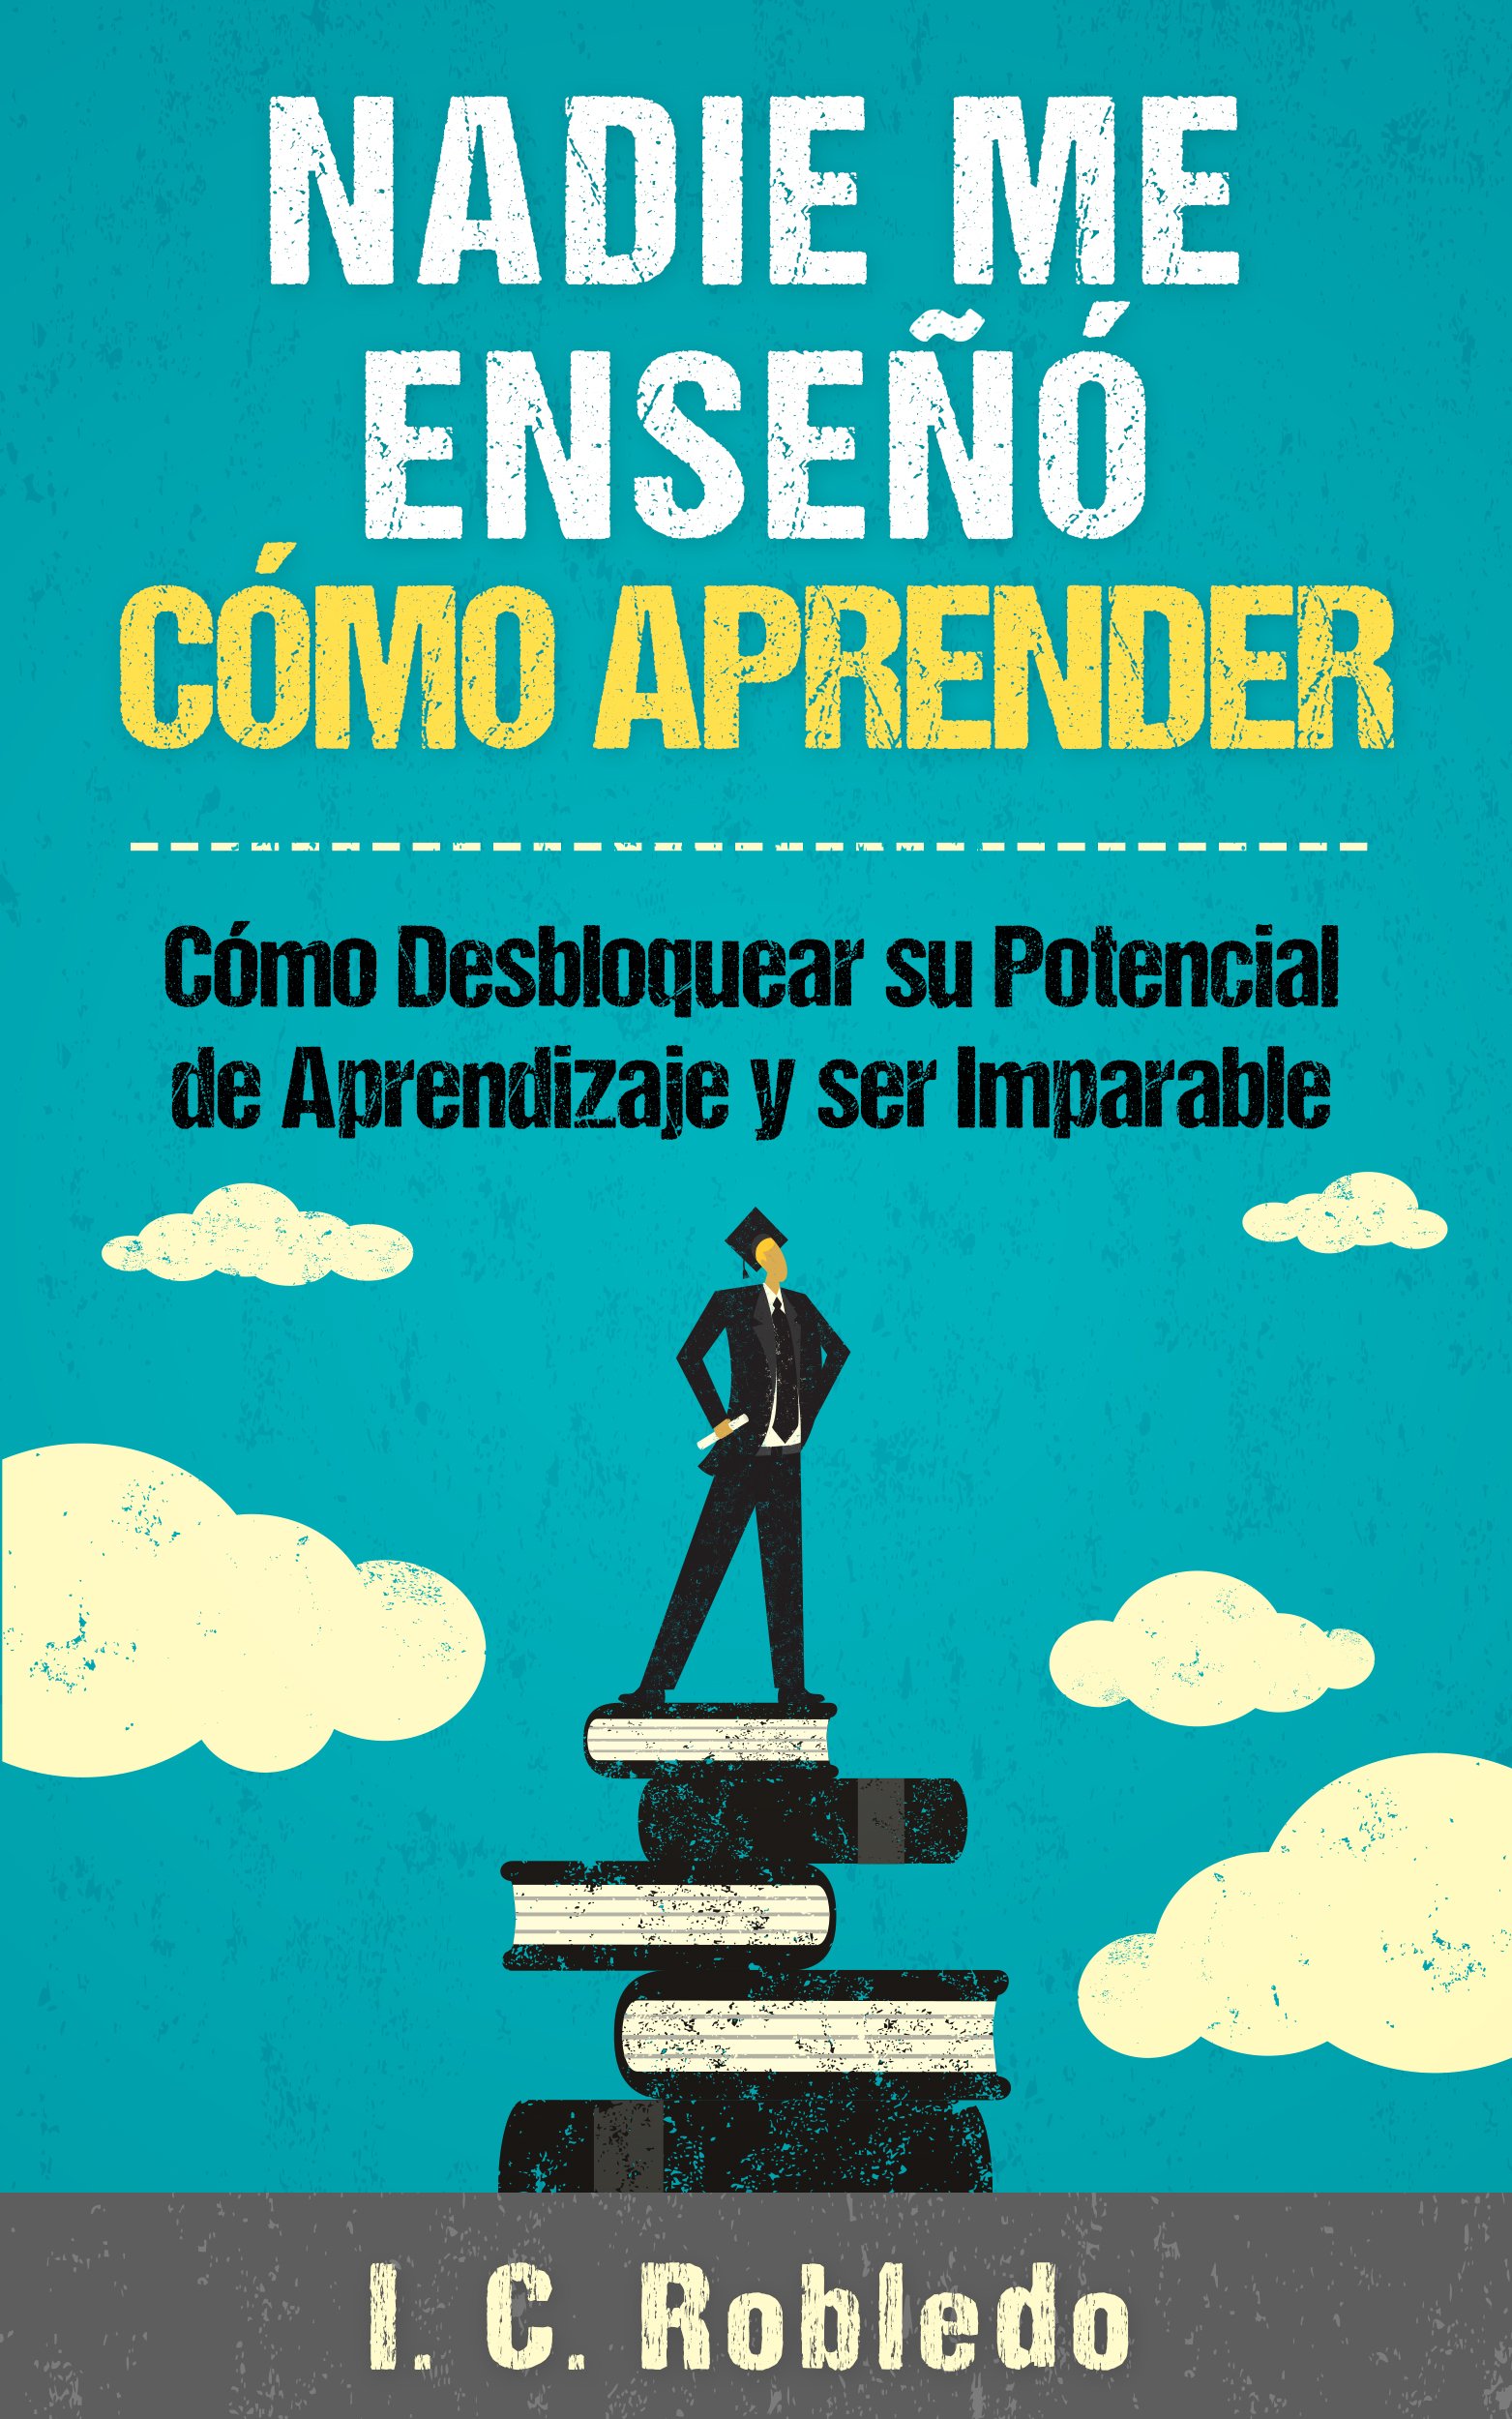 Nadie Me Enseñó Cómo Aprender: Cómo Desbloquear su Potencial de Aprendizaje y Ser Imparable (Domine Su Mente, Transforme Su Vida) (Spanish Edition)